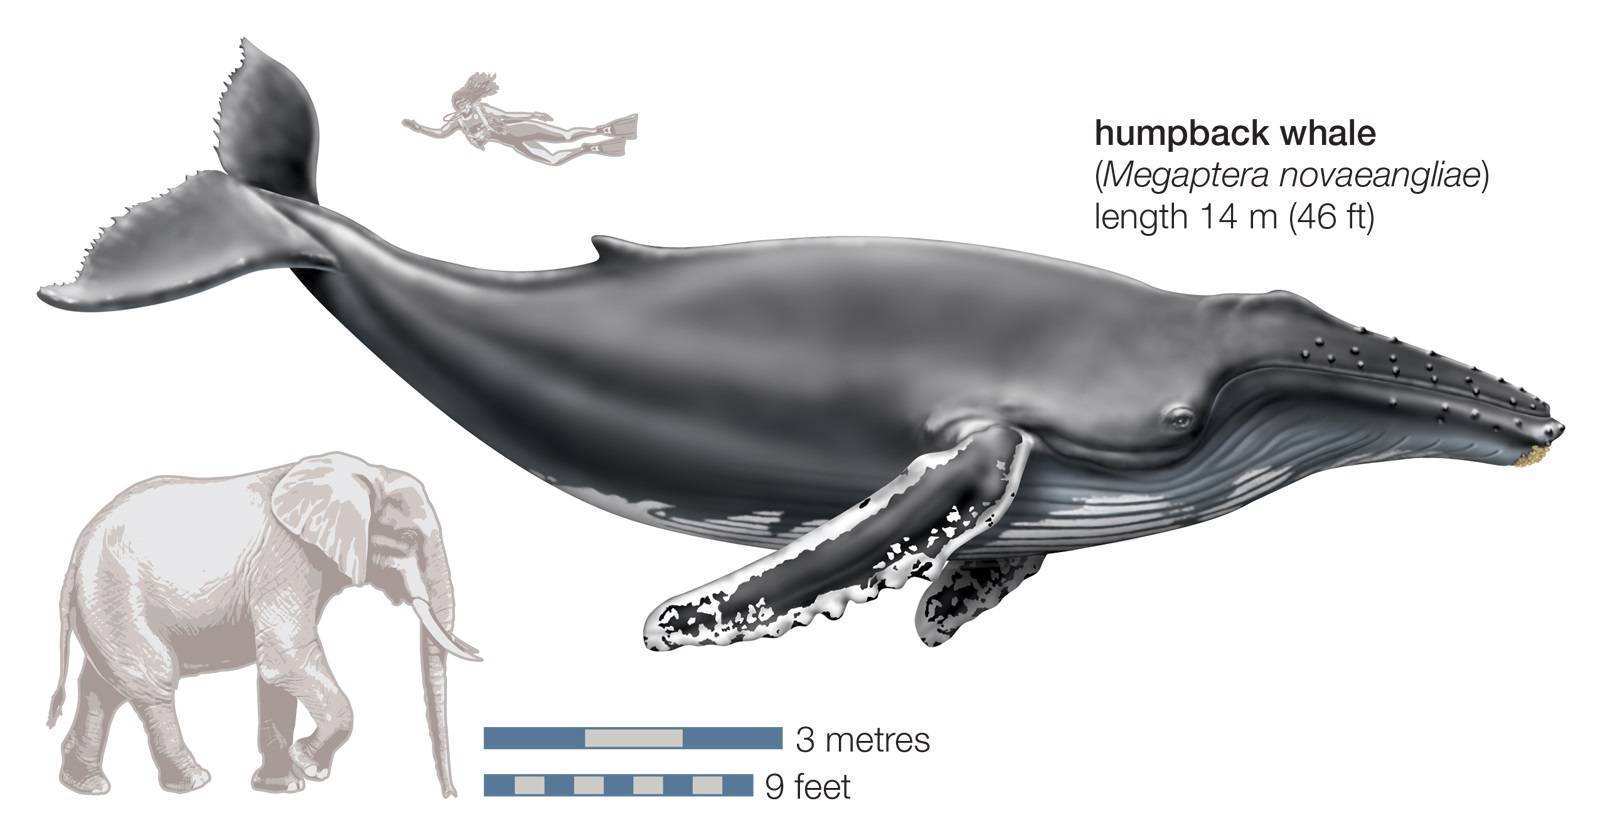 Усатые киты: классификация, описание, питание, поведение и угрозы